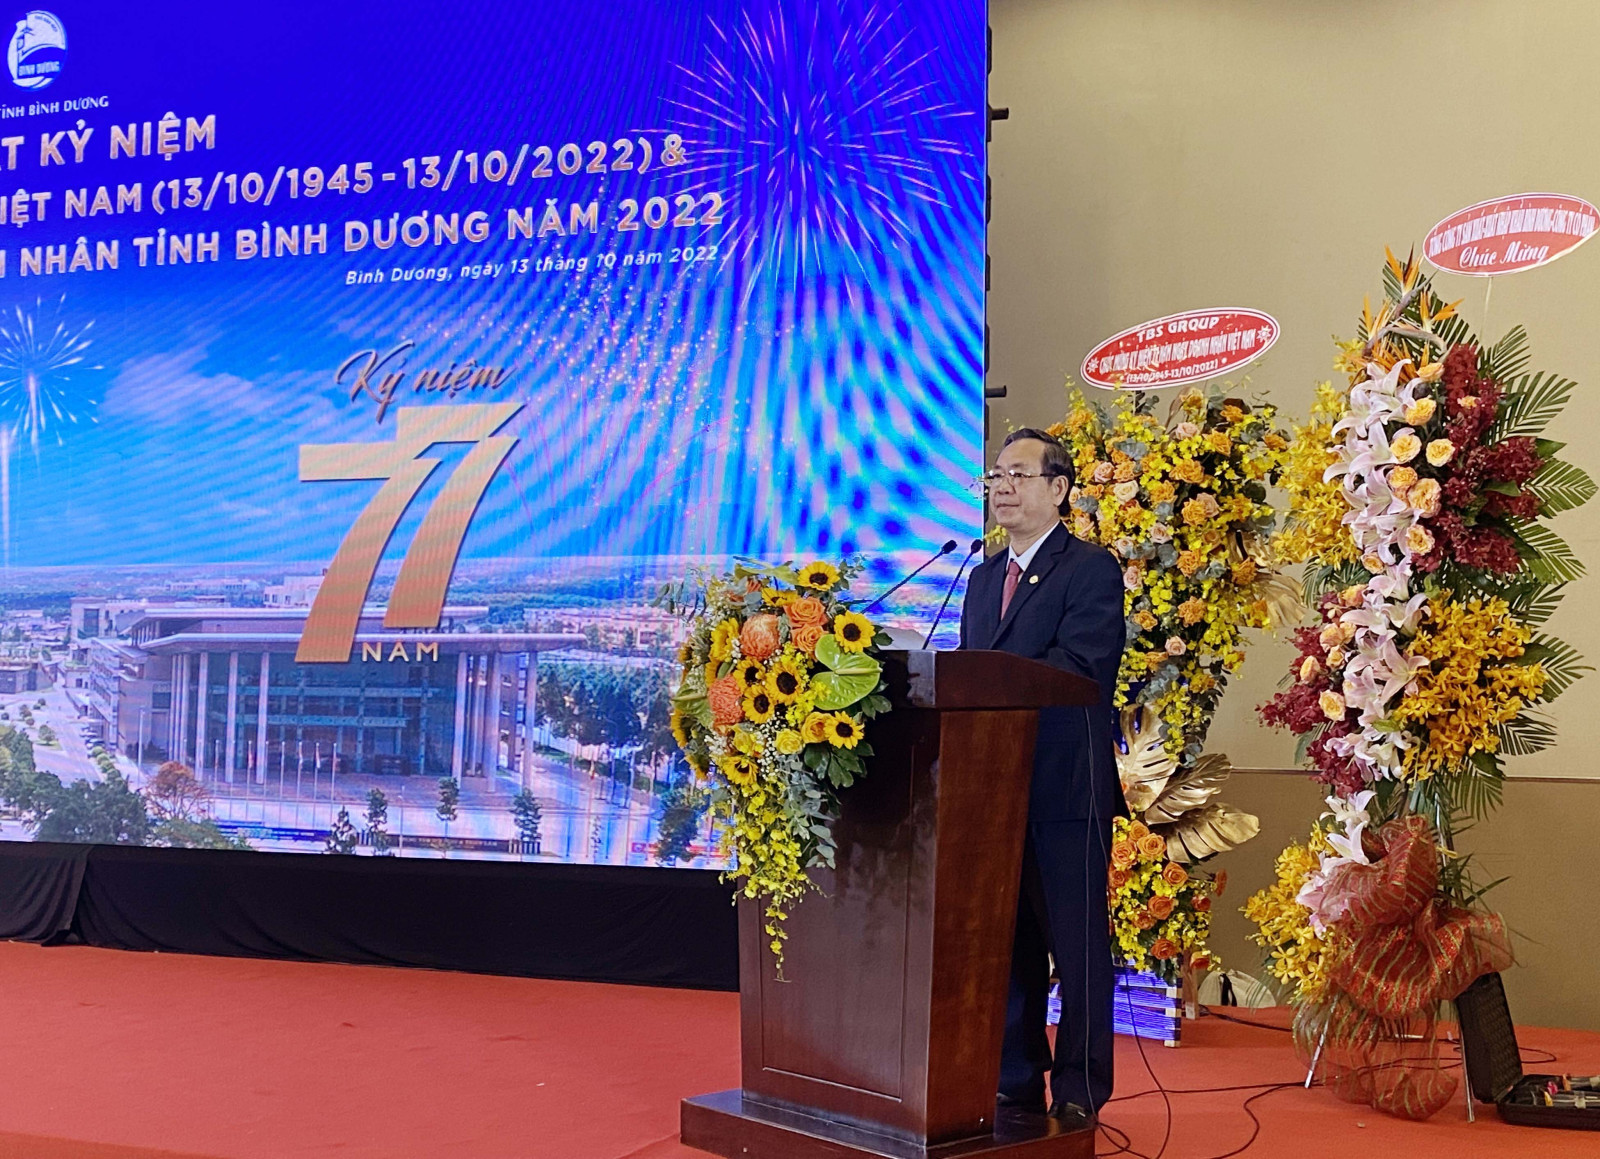 Phó Chủ tịch UBND tỉnh Bình Dương Nguyễn Văn Dành phát biểu tại Lễ kỷ niệm (Ảnh: T.My).